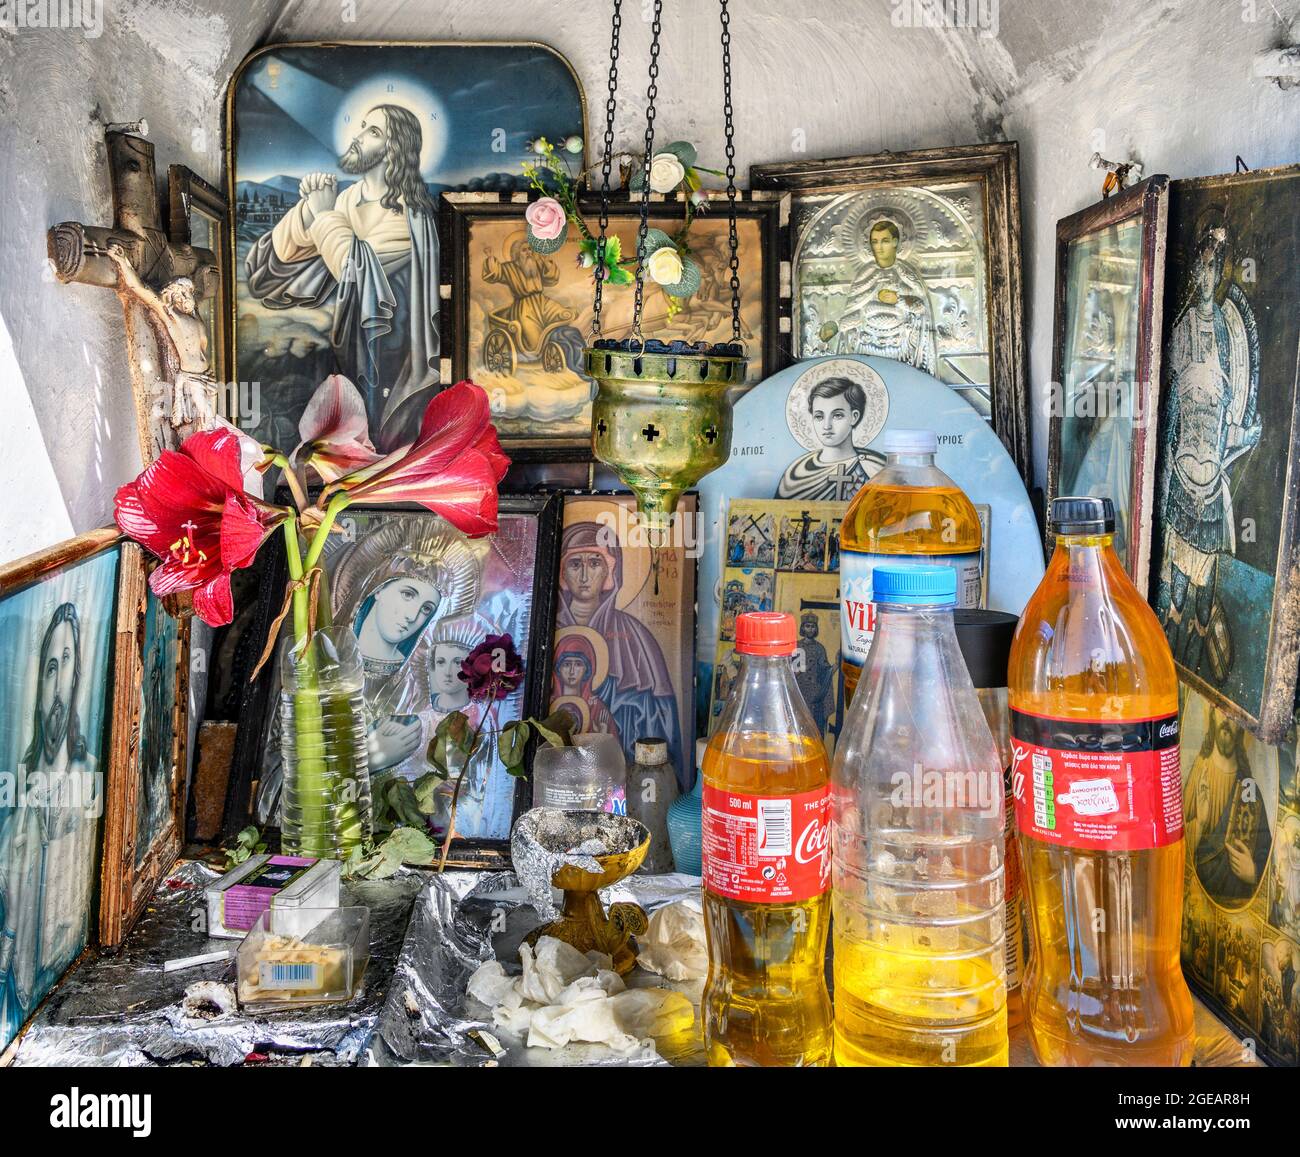 L'intérieur d'un sanctuaire grec orthodoxe en bord de route présentant des icônes religieuses, des bouteilles d'huile sainte et des brûleurs à encens. Arcadia, Péloponnèse, Grèce Banque D'Images